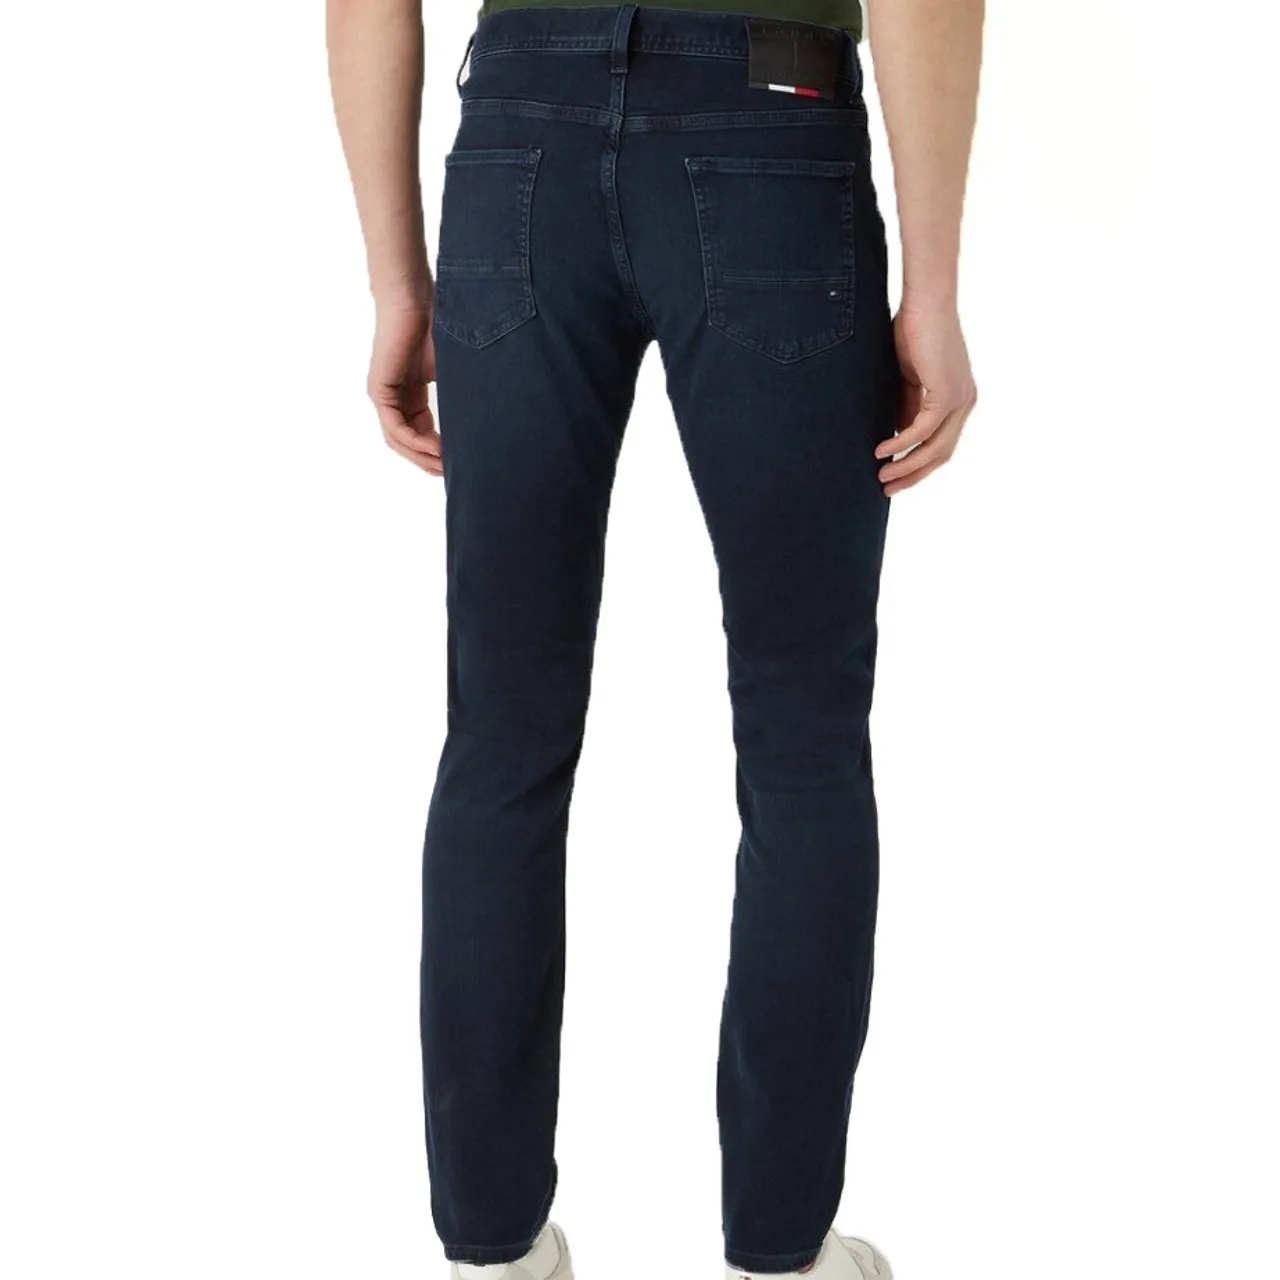 Tommy Hilfiger Core slim bleecker jeans